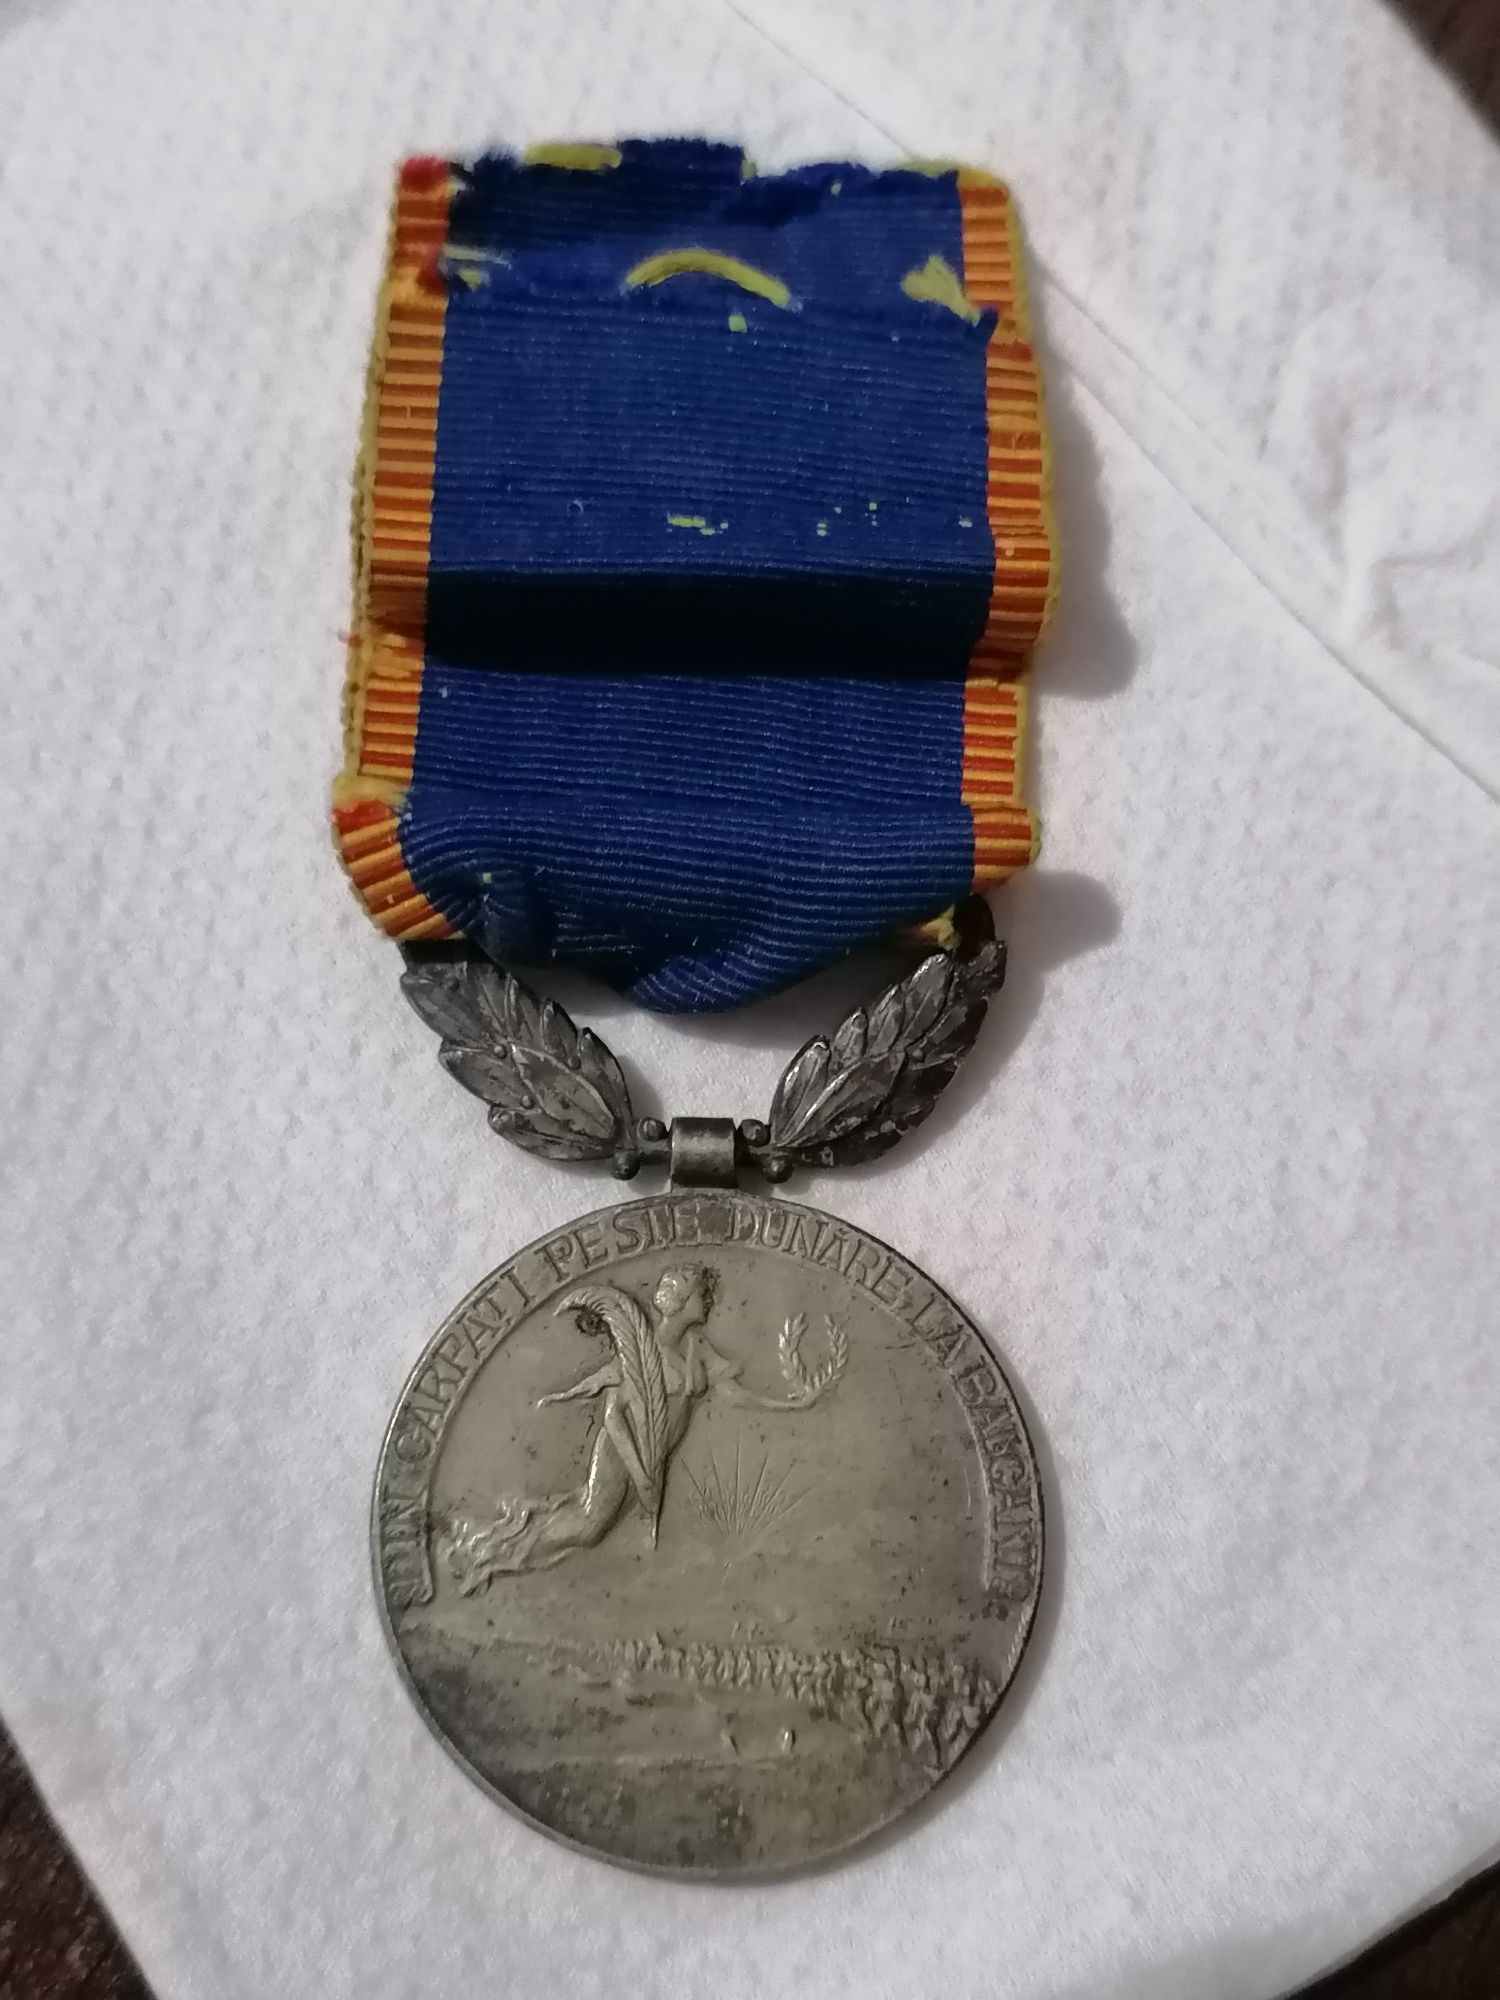 Medalie avântul tarii 1913